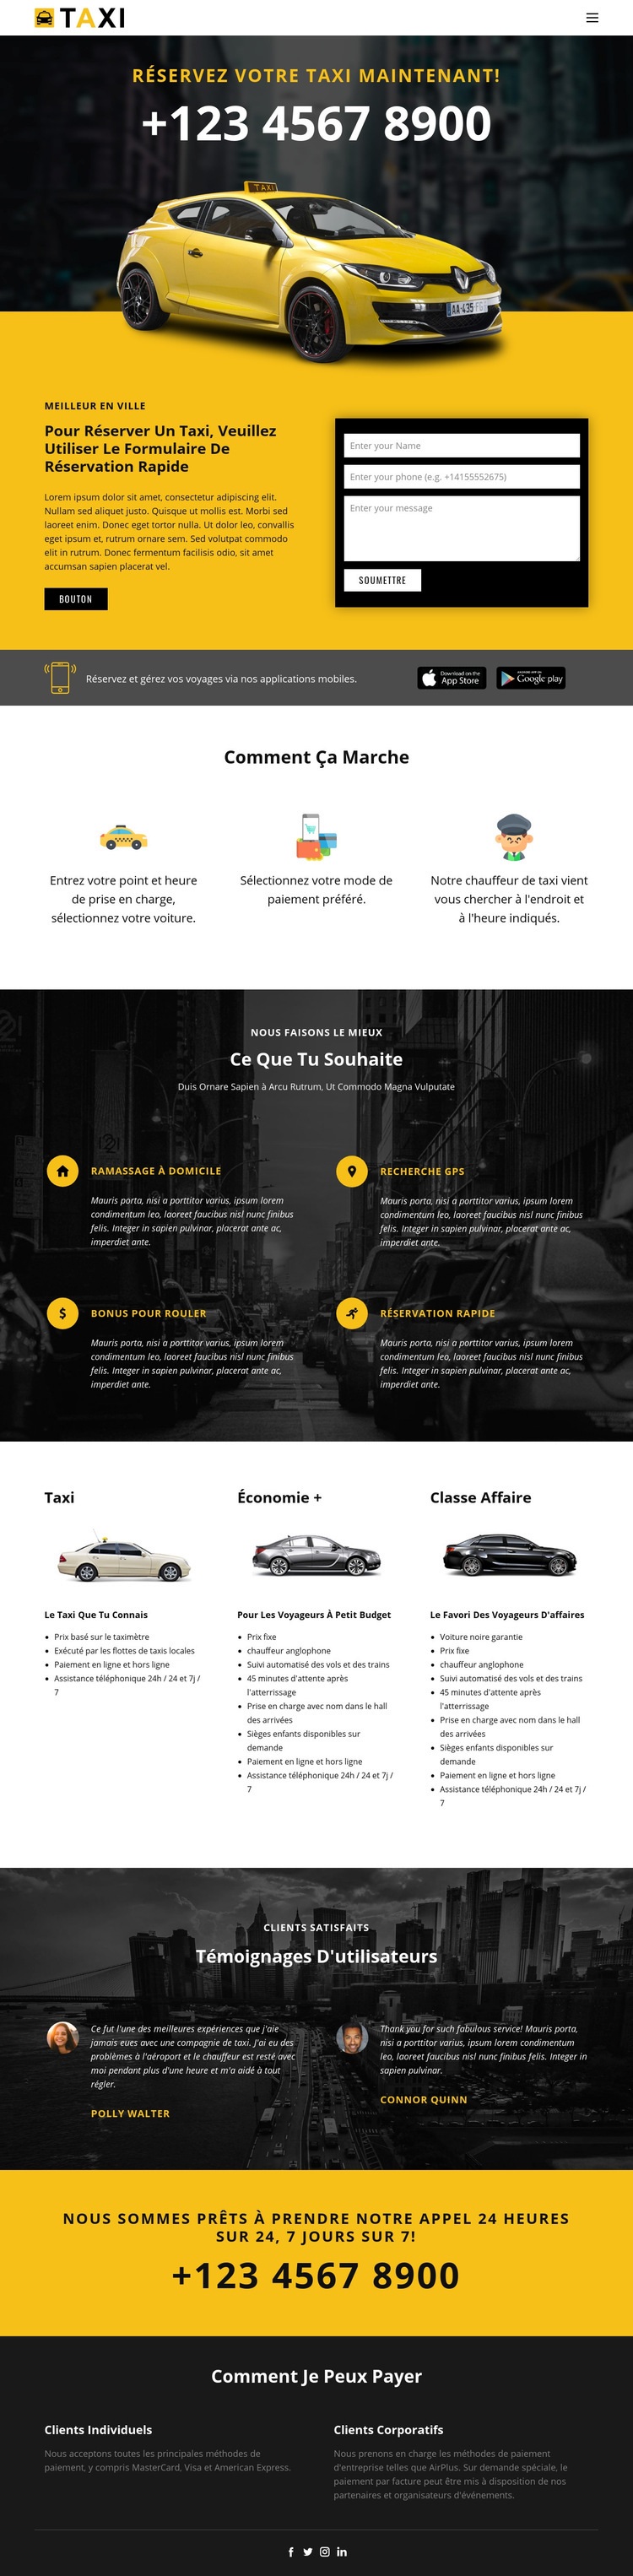 Voitures de taxi les plus rapides Maquette de site Web